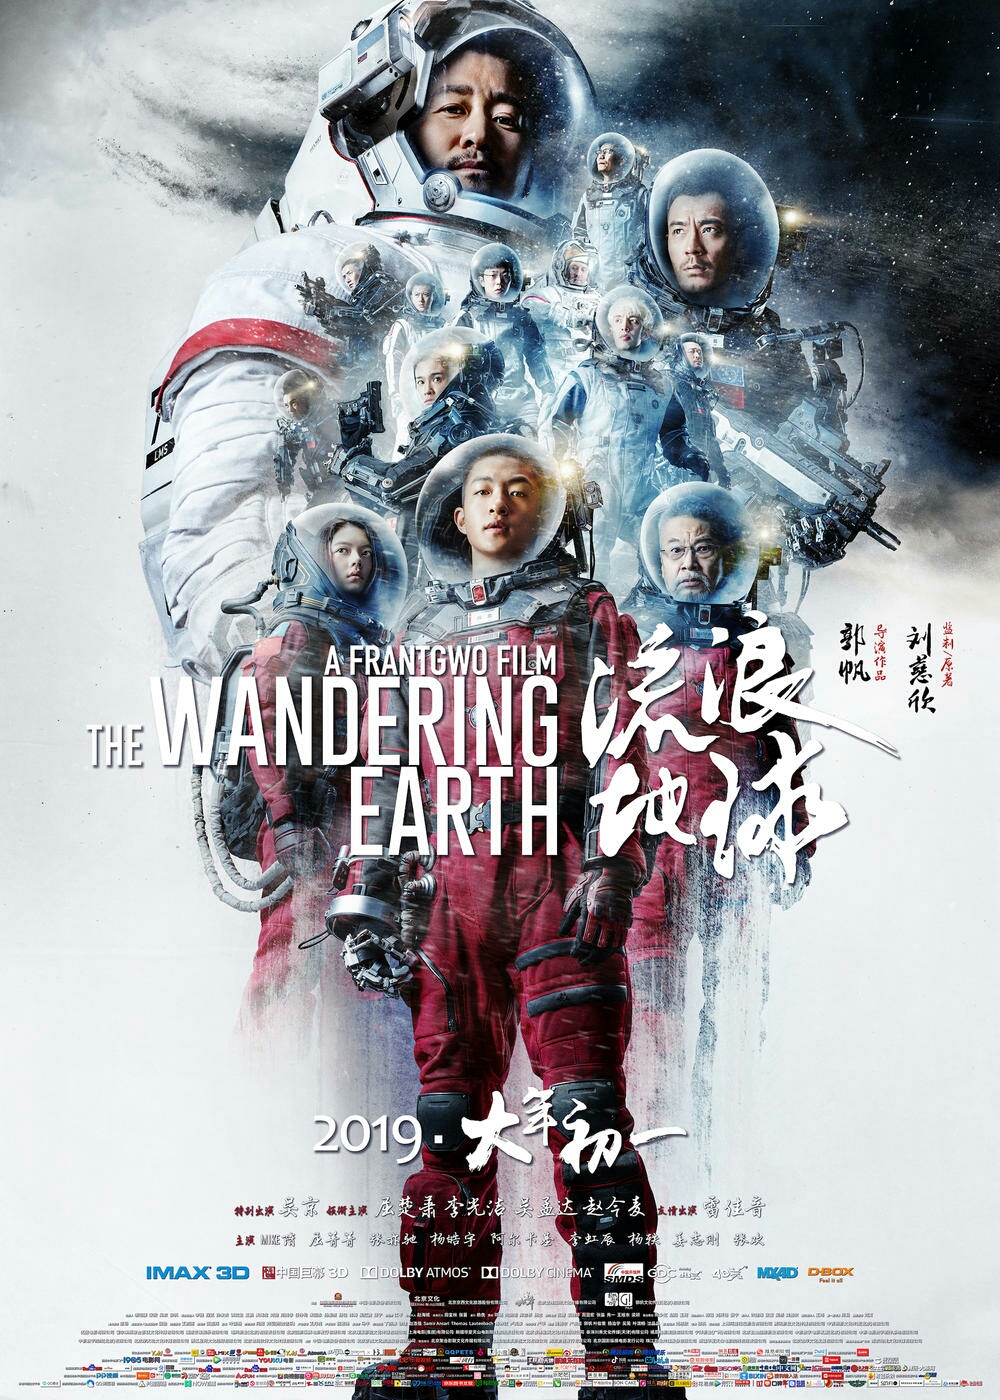 《流浪地球》的主创,感谢刘慈欣先生,在质量参差不齐的贺岁档电影中